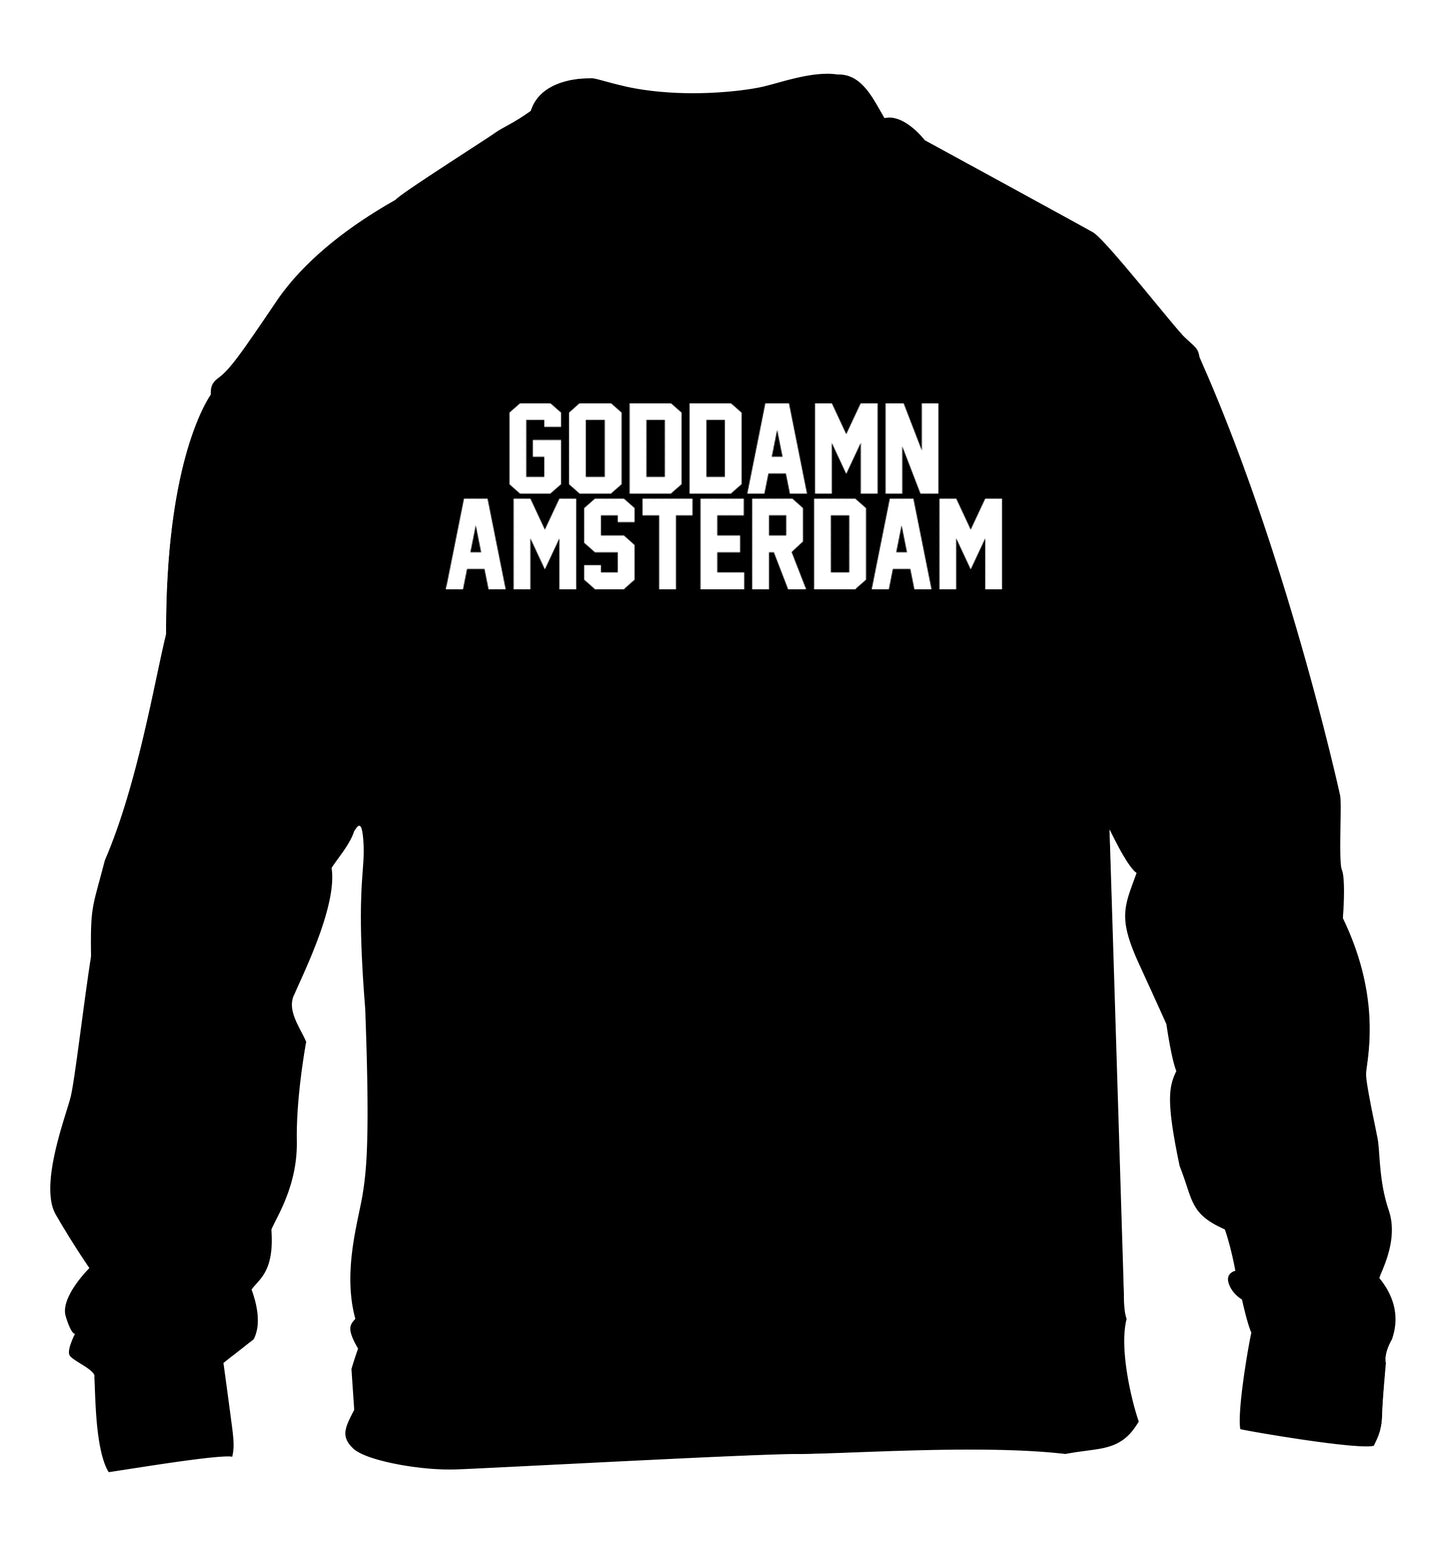 Goddamn Amsterdam children's black sweater 12-13 Years